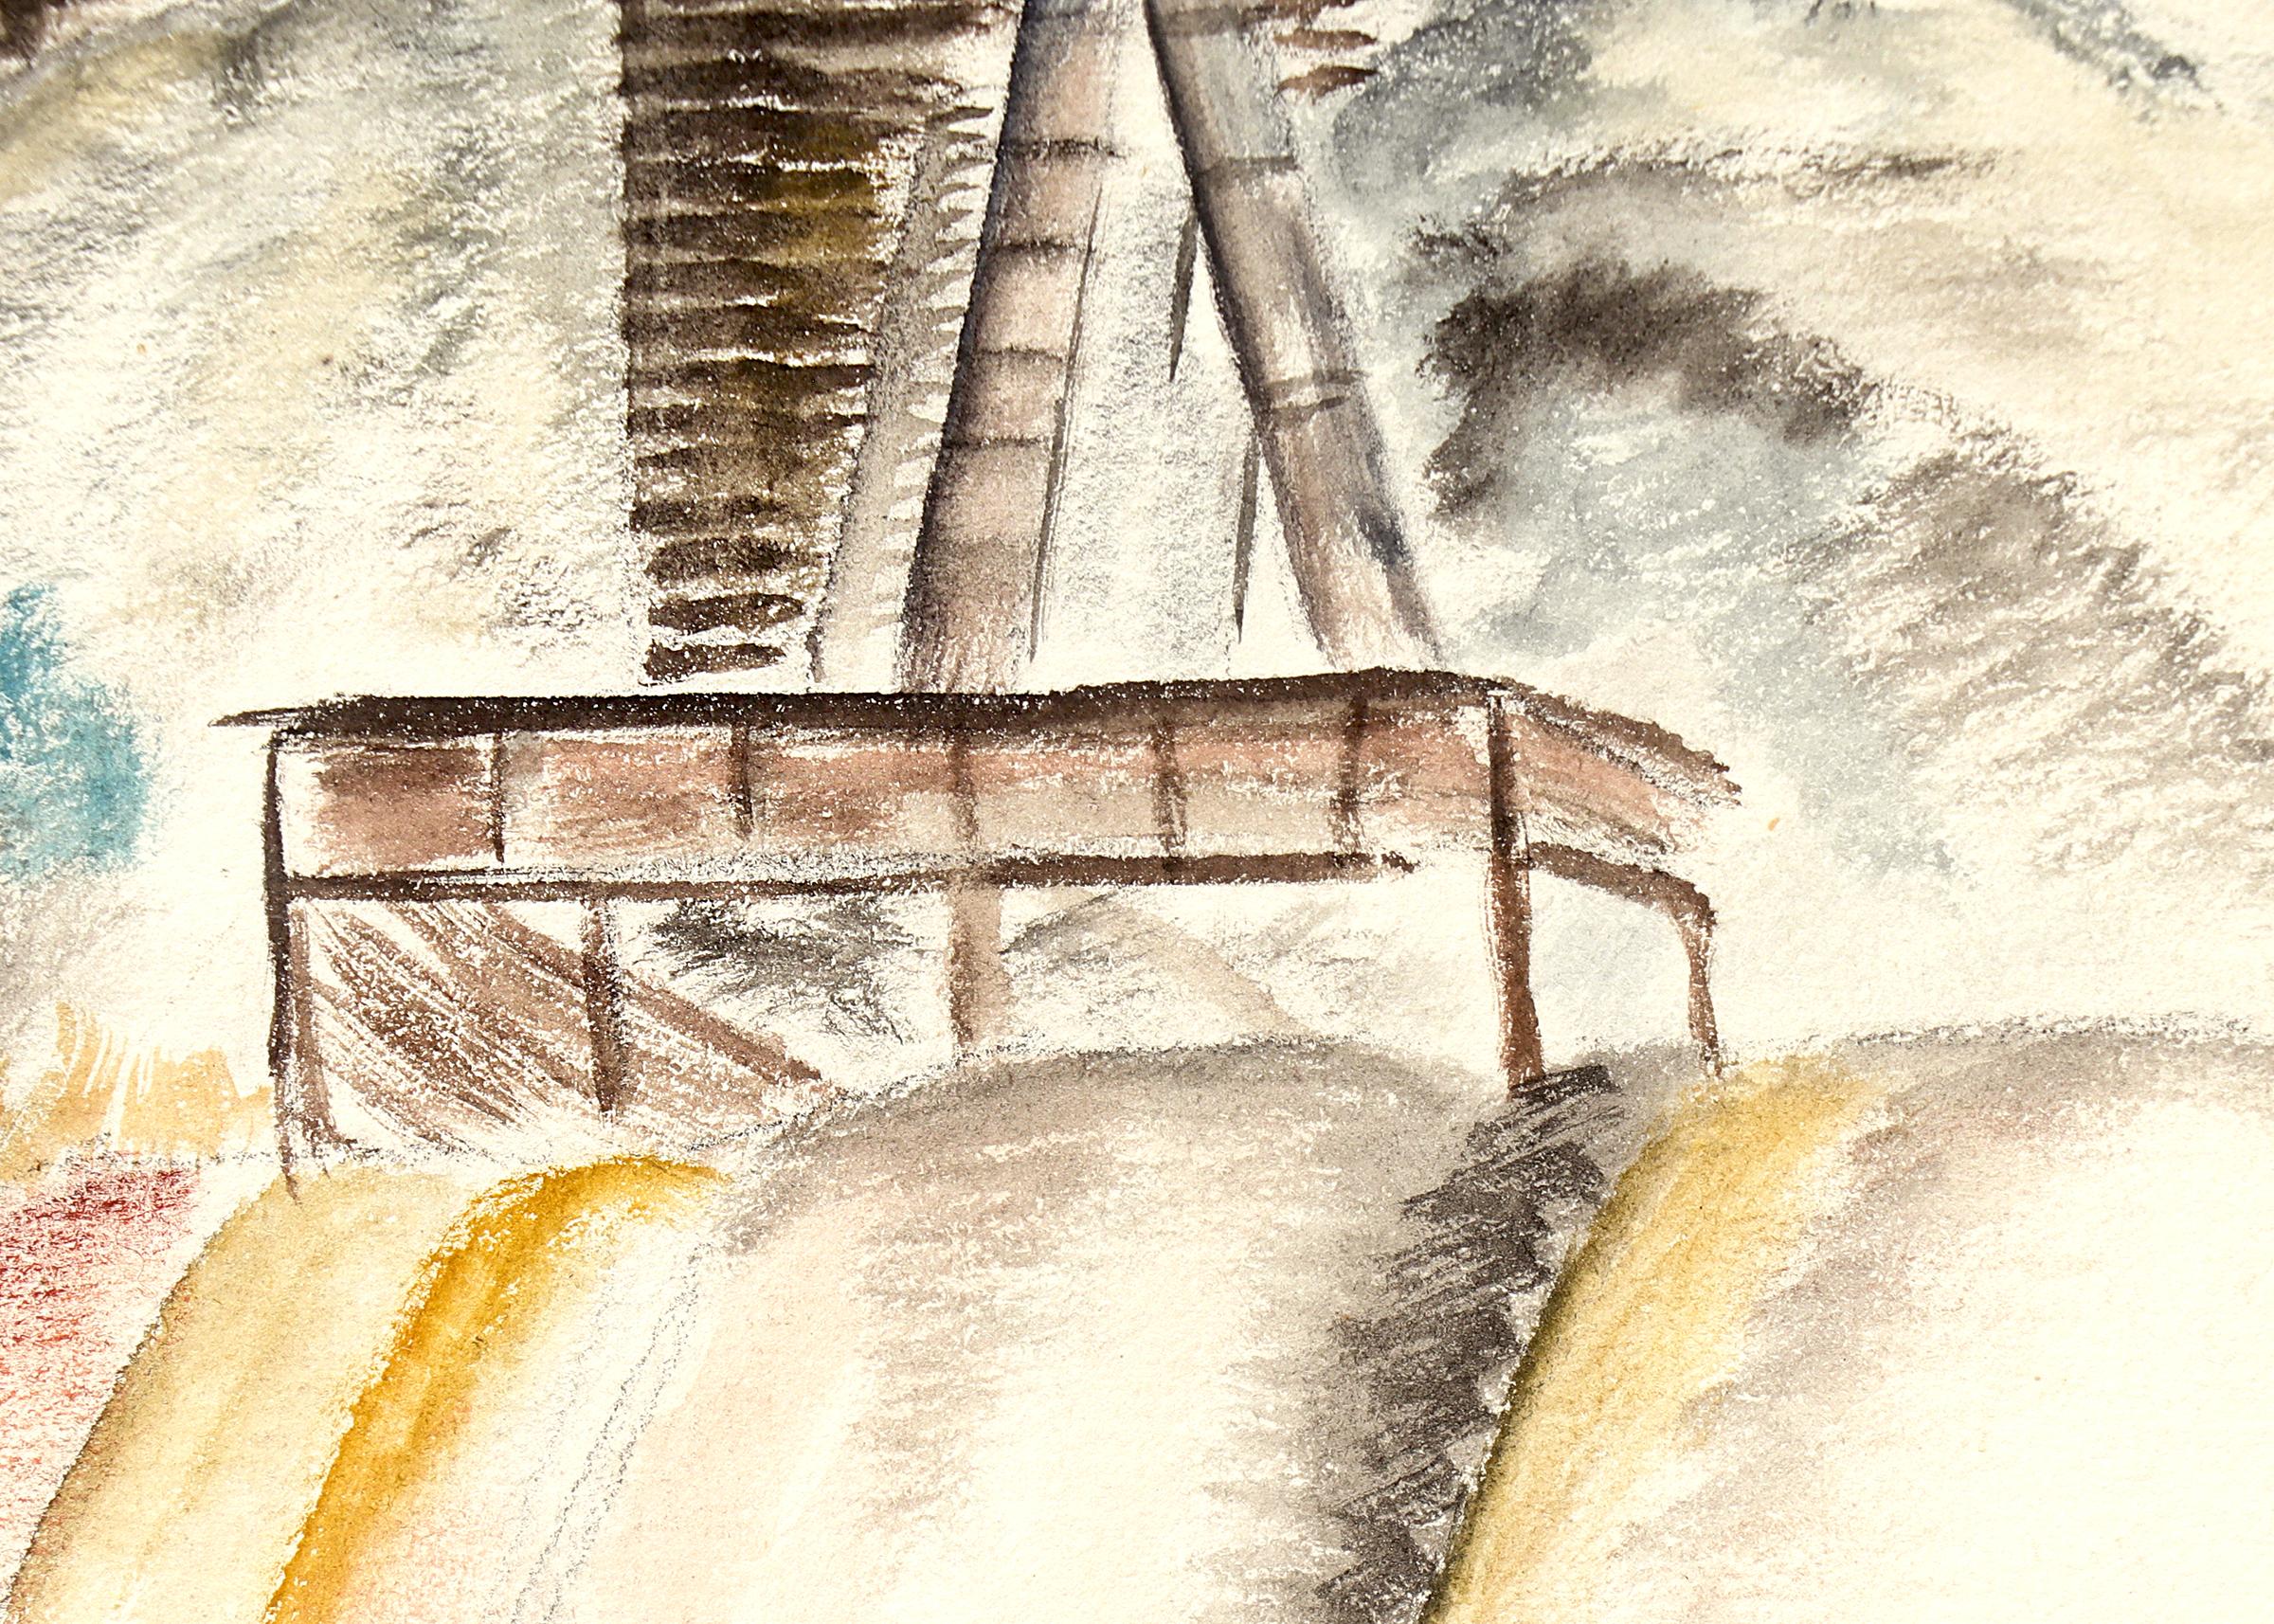 Peinture au graphite et à l'aquarelle d'un paysage minier du Colorado en rouge, jaune et brun, réalisée par l'artiste du 20e siècle, Louise Emerson Ronnebeck. Présenté dans un cadre personnalisé, les dimensions extérieures mesurent 21 ⅛ x 17 ⅞ x ¾